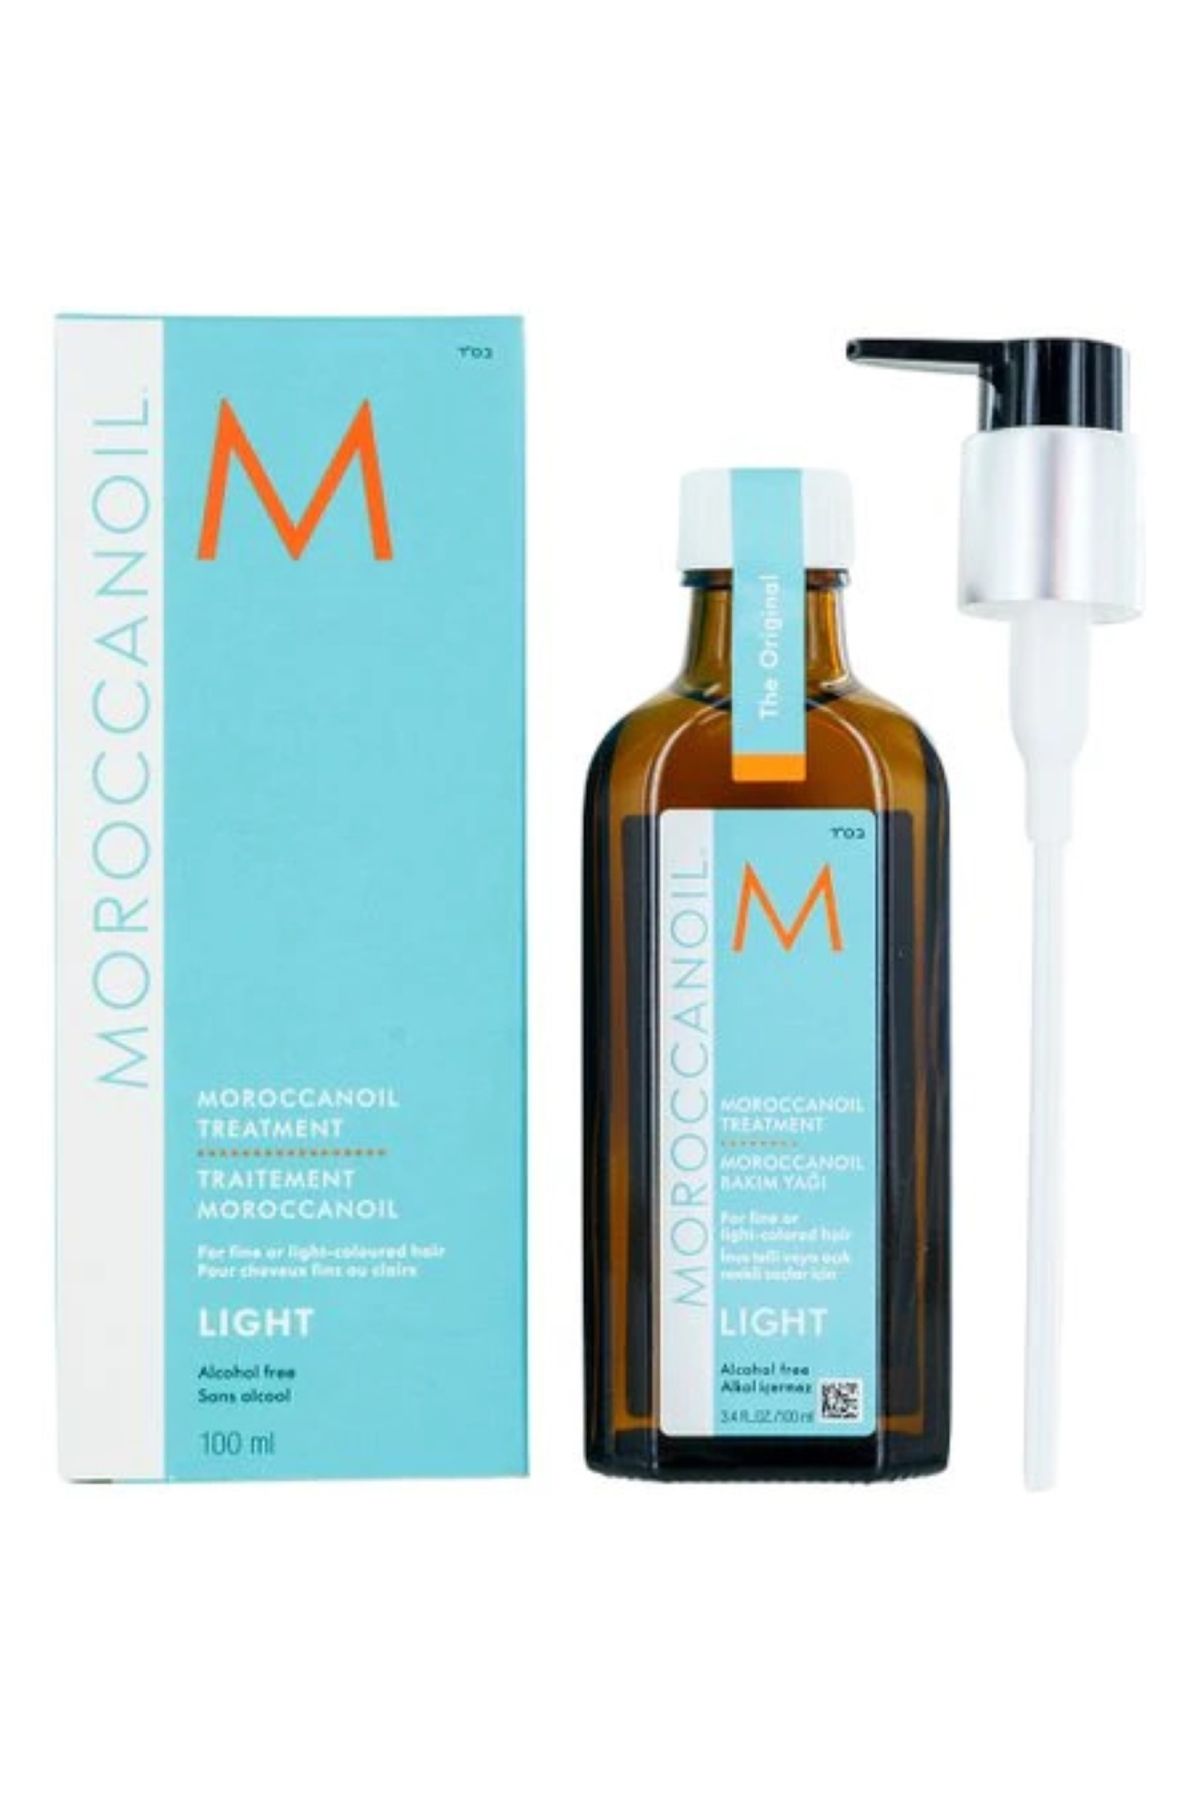 Moroccanoil Treatment Light -İnce Açık Renkli Saçlar İçin Şekillendirici Lüks Yağ 100 ml CYT9794664